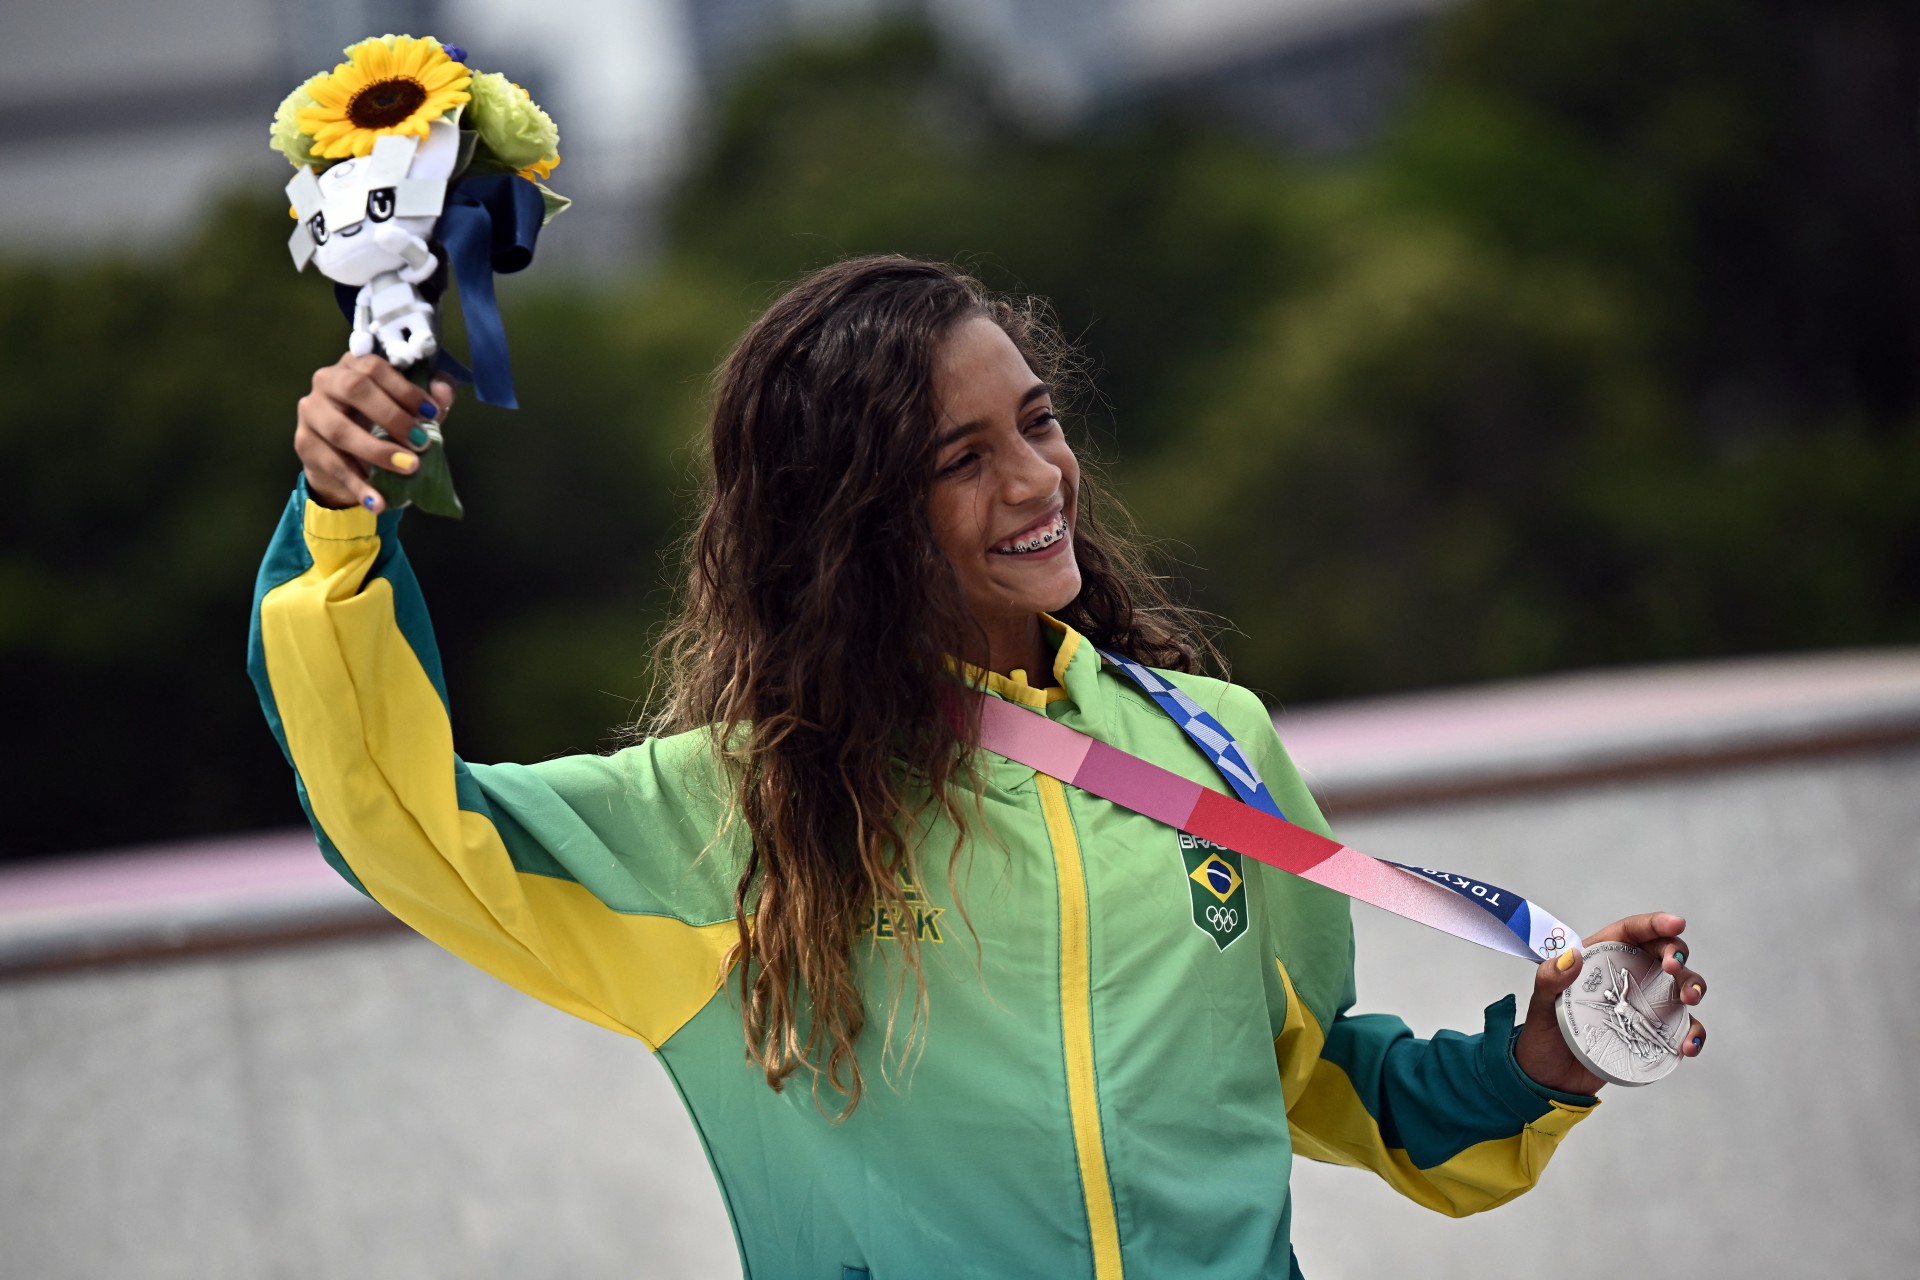 Rayssa Leal - A jovem skatista brasileira foi medalhista de prata na edição de Tóquio 2021. Fadinha, como é conhecida a atleta, ficou com o segundo lugar na categoria street. Rayssa se tornou a brasileira mais jovem a conquistar uma medalha nos Jogos Olímpicos. - AFP